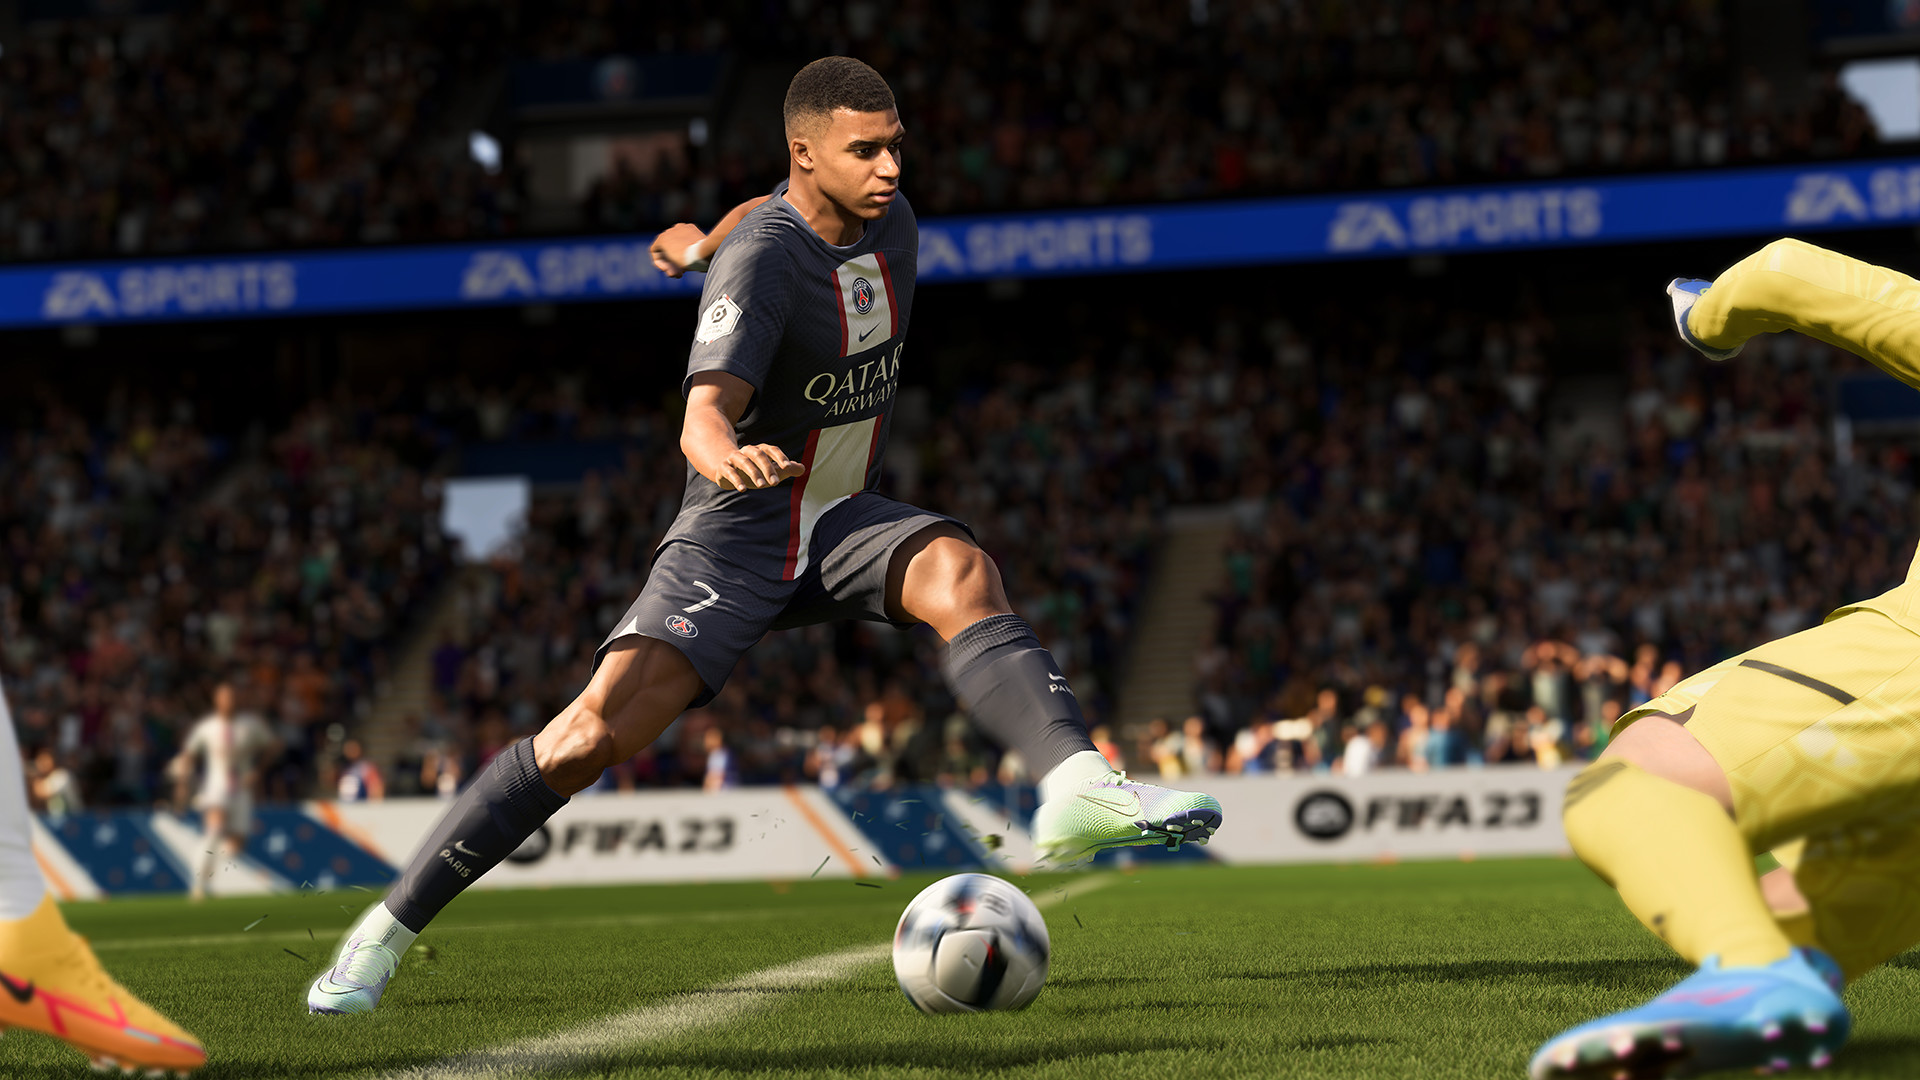 Comment marquer un but facile dans FIFA 23 ?